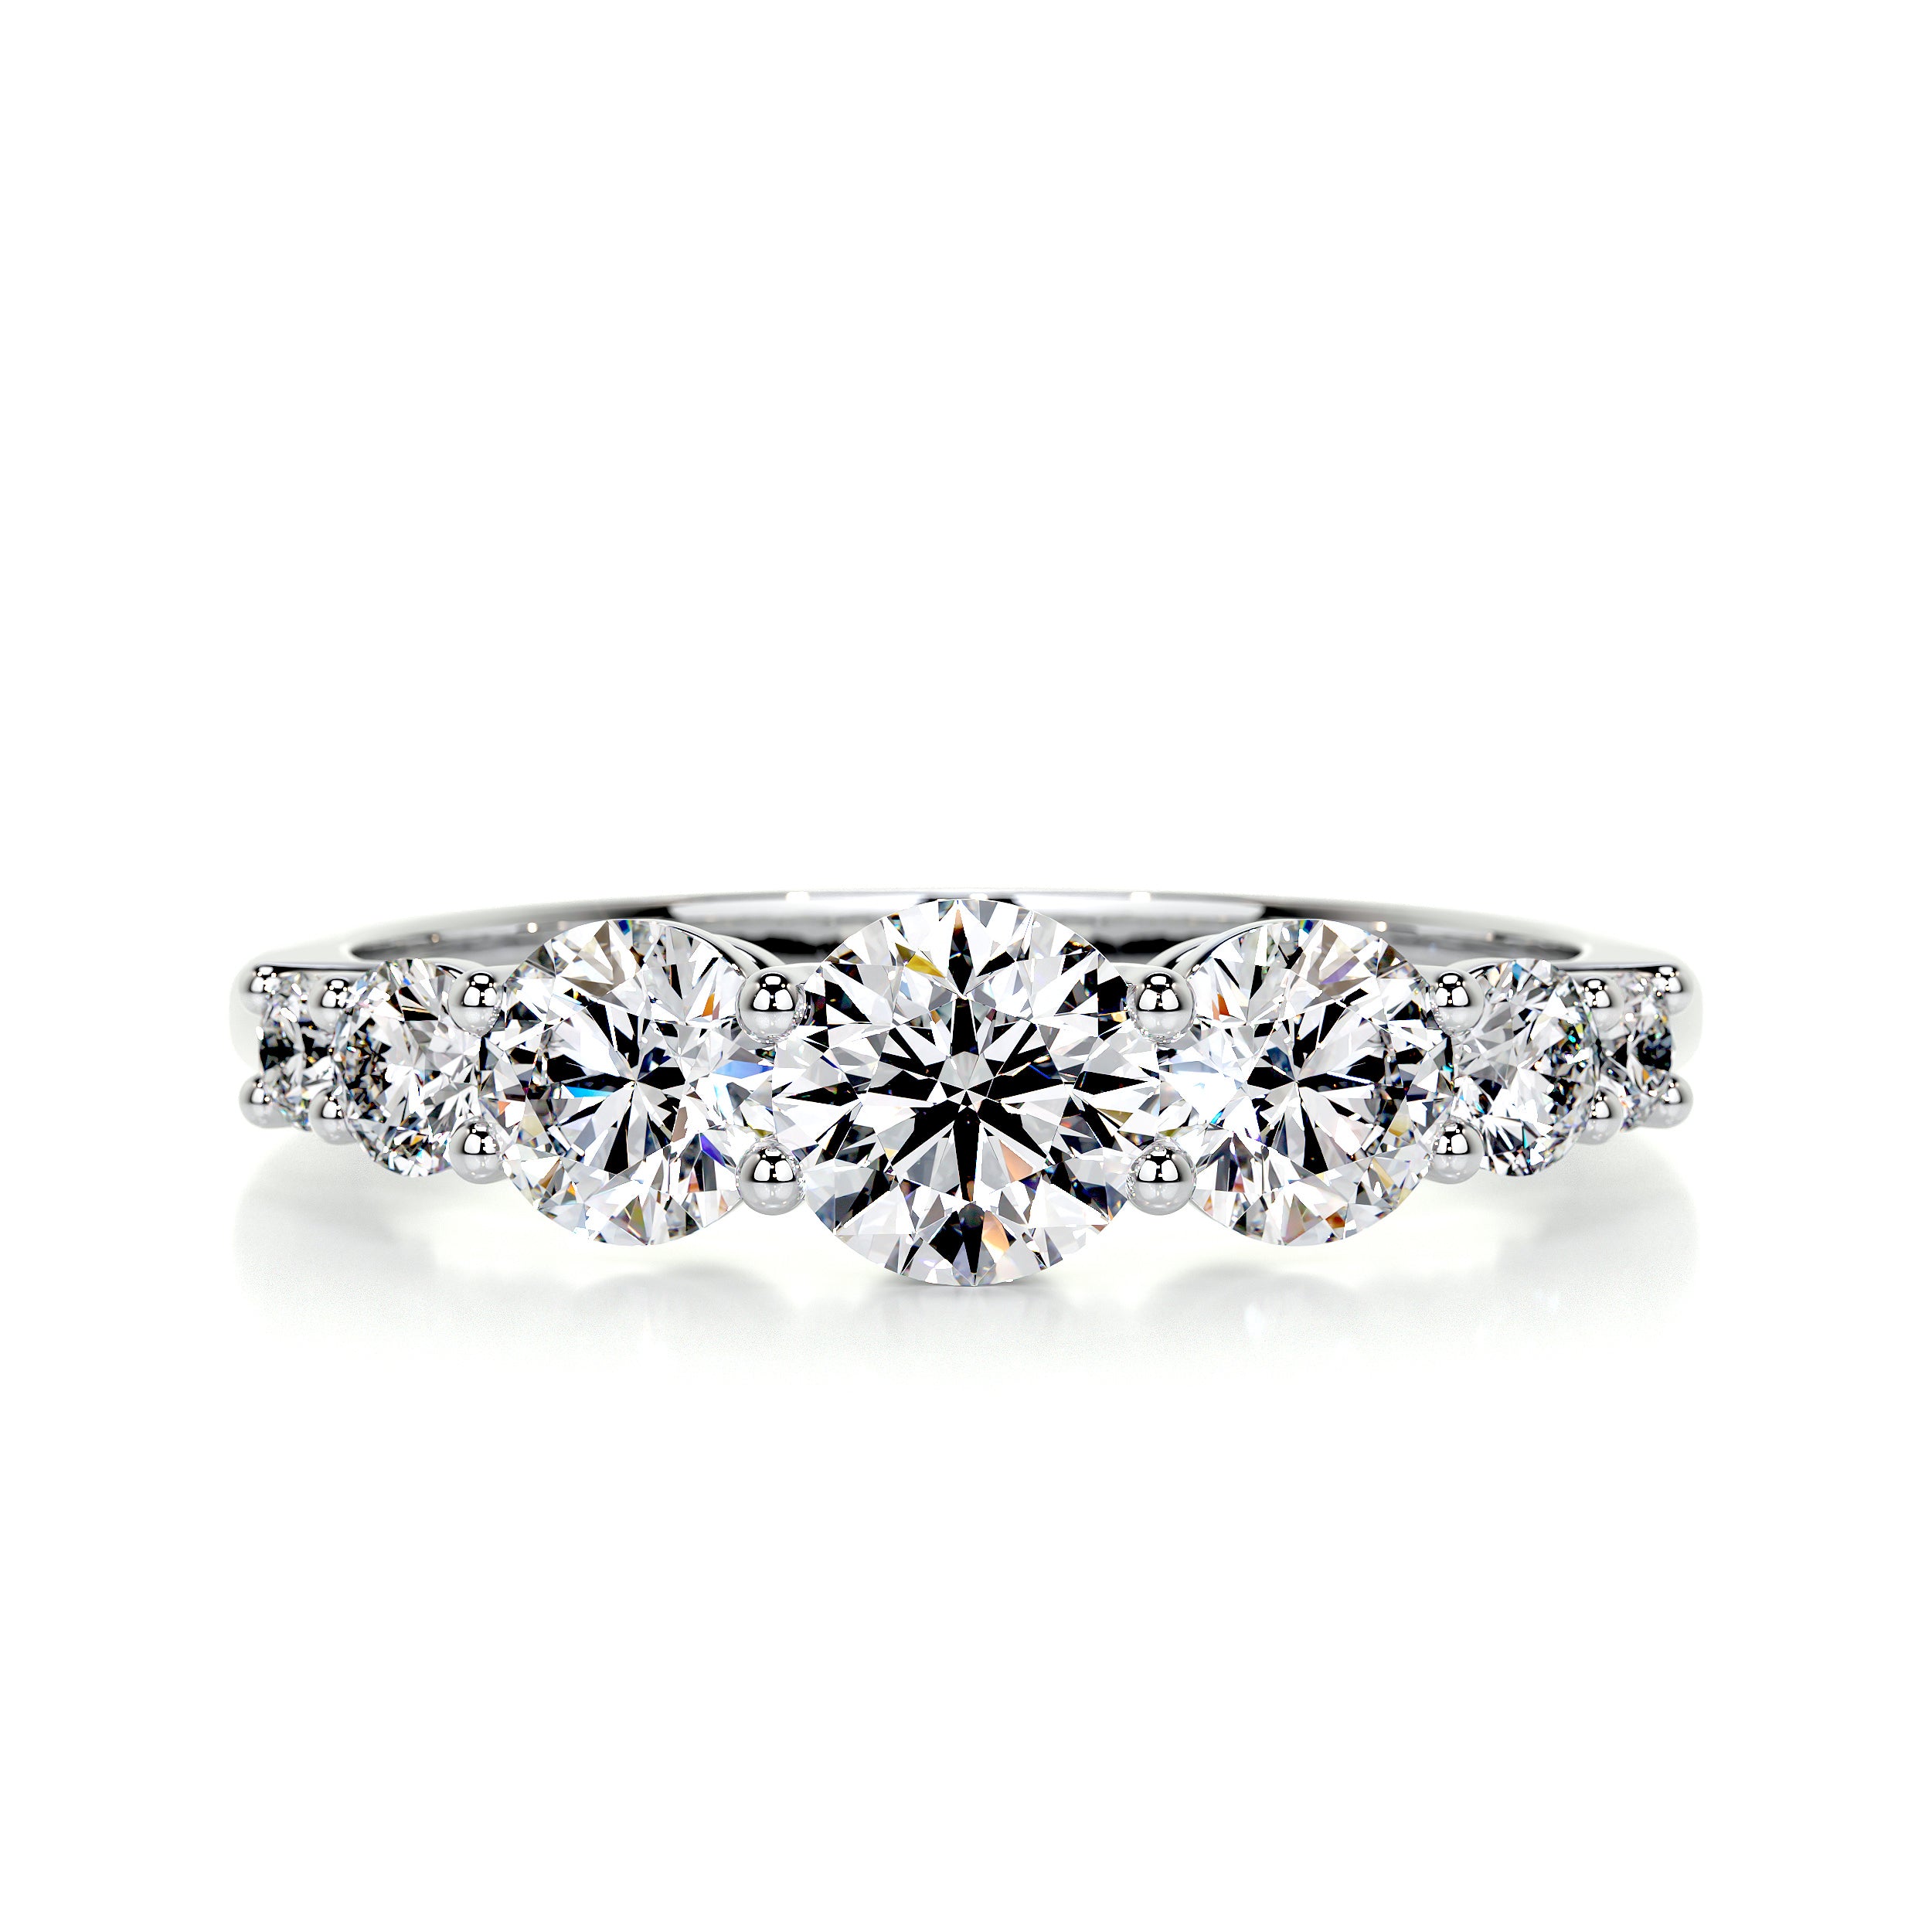 Makenzi Diamond Engagement Ring -14K White Gold